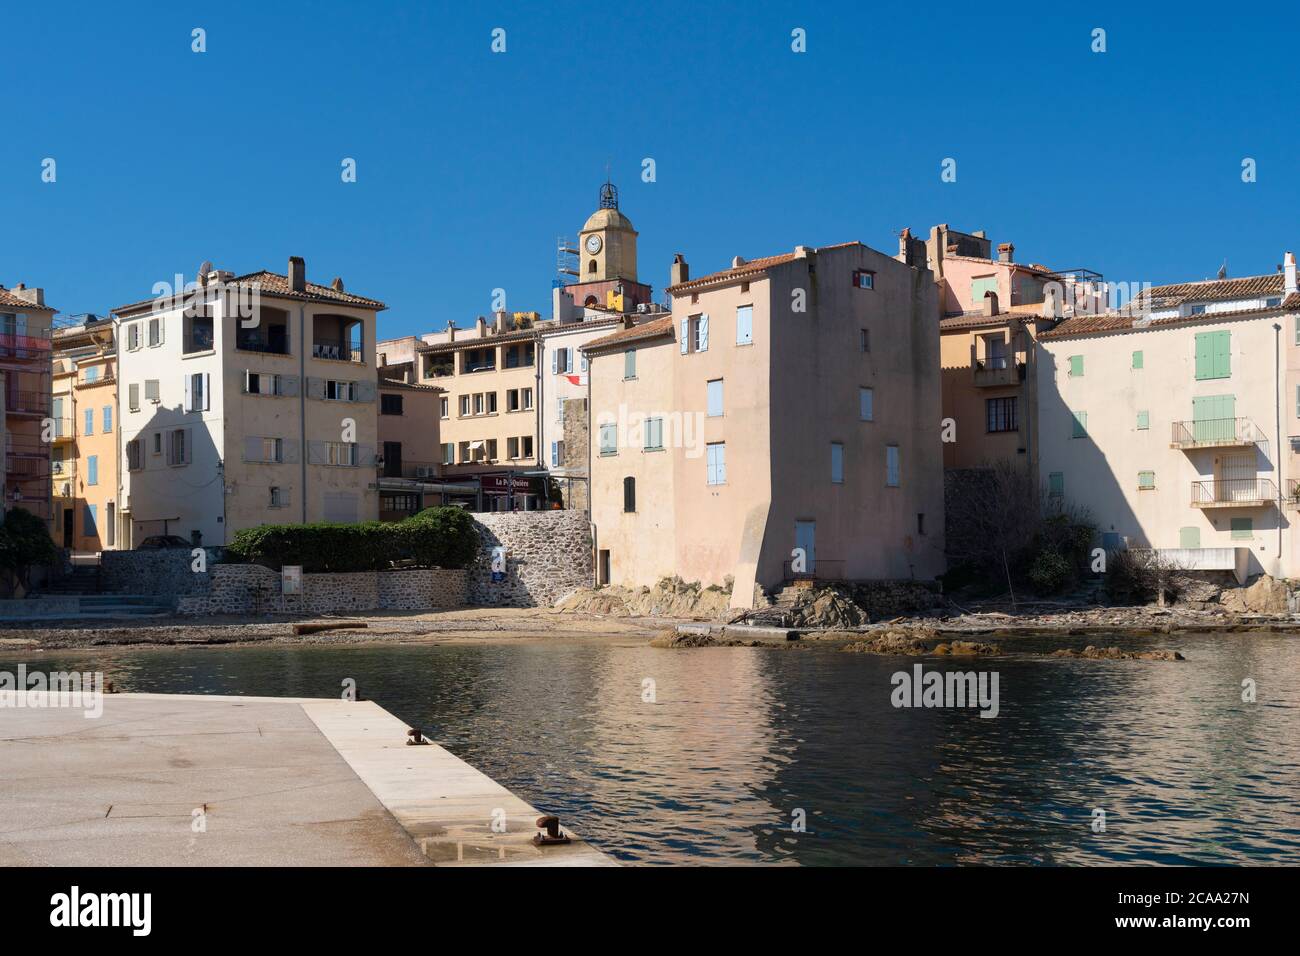 Le célèbre village de Saint-Tropez situé sur la côte d'azur dans le Var. Plage de la ponche Banque D'Images